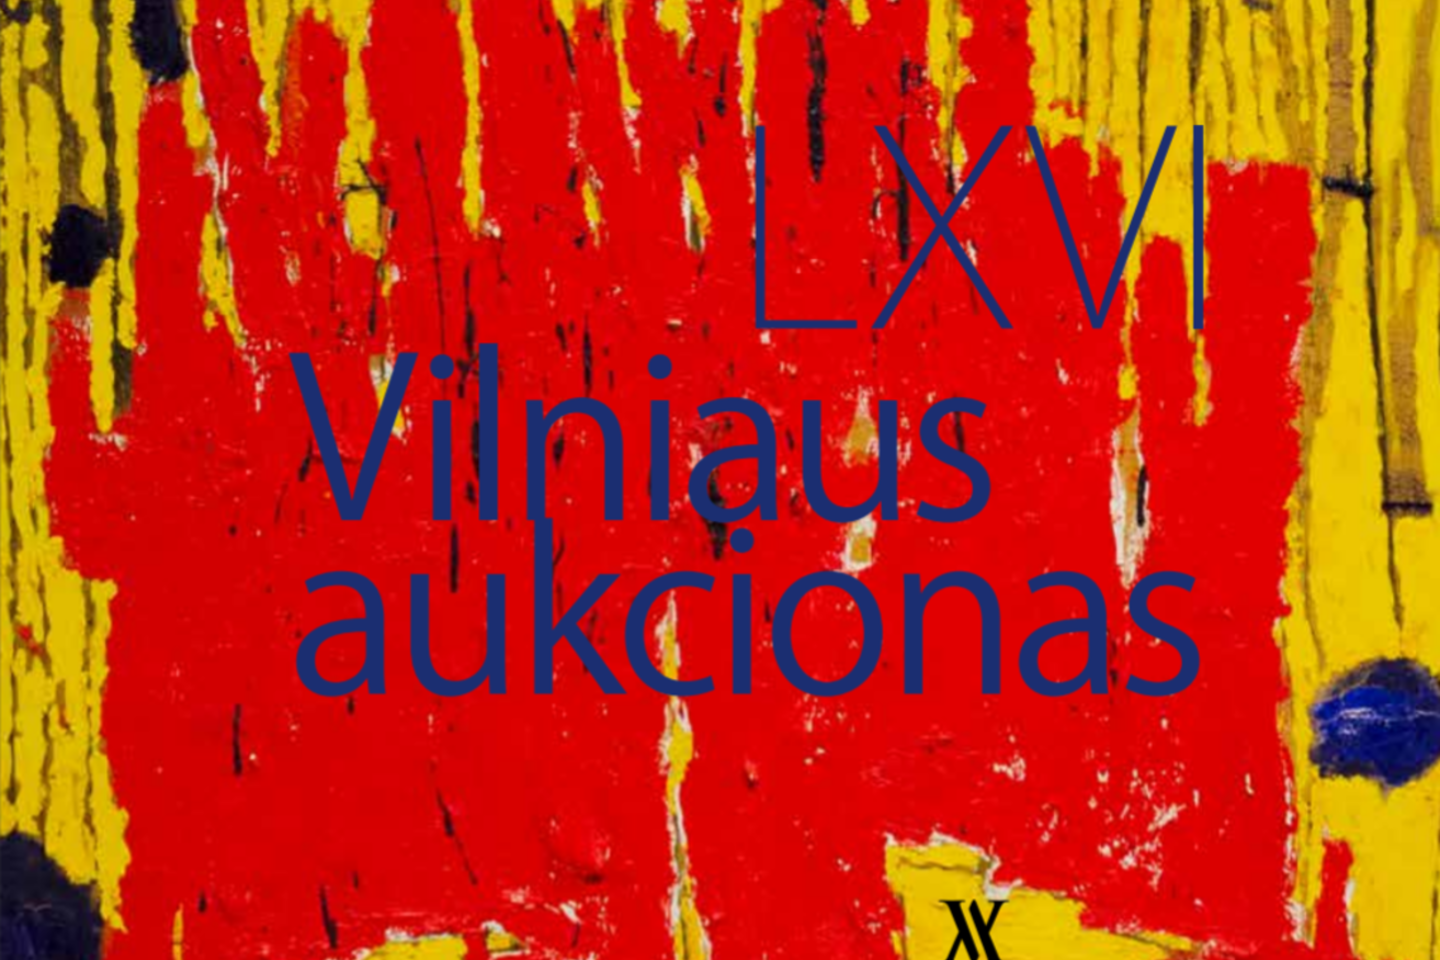 Vilniaus aukcionas vyks jau šešiasdešimt šeštą kartą.